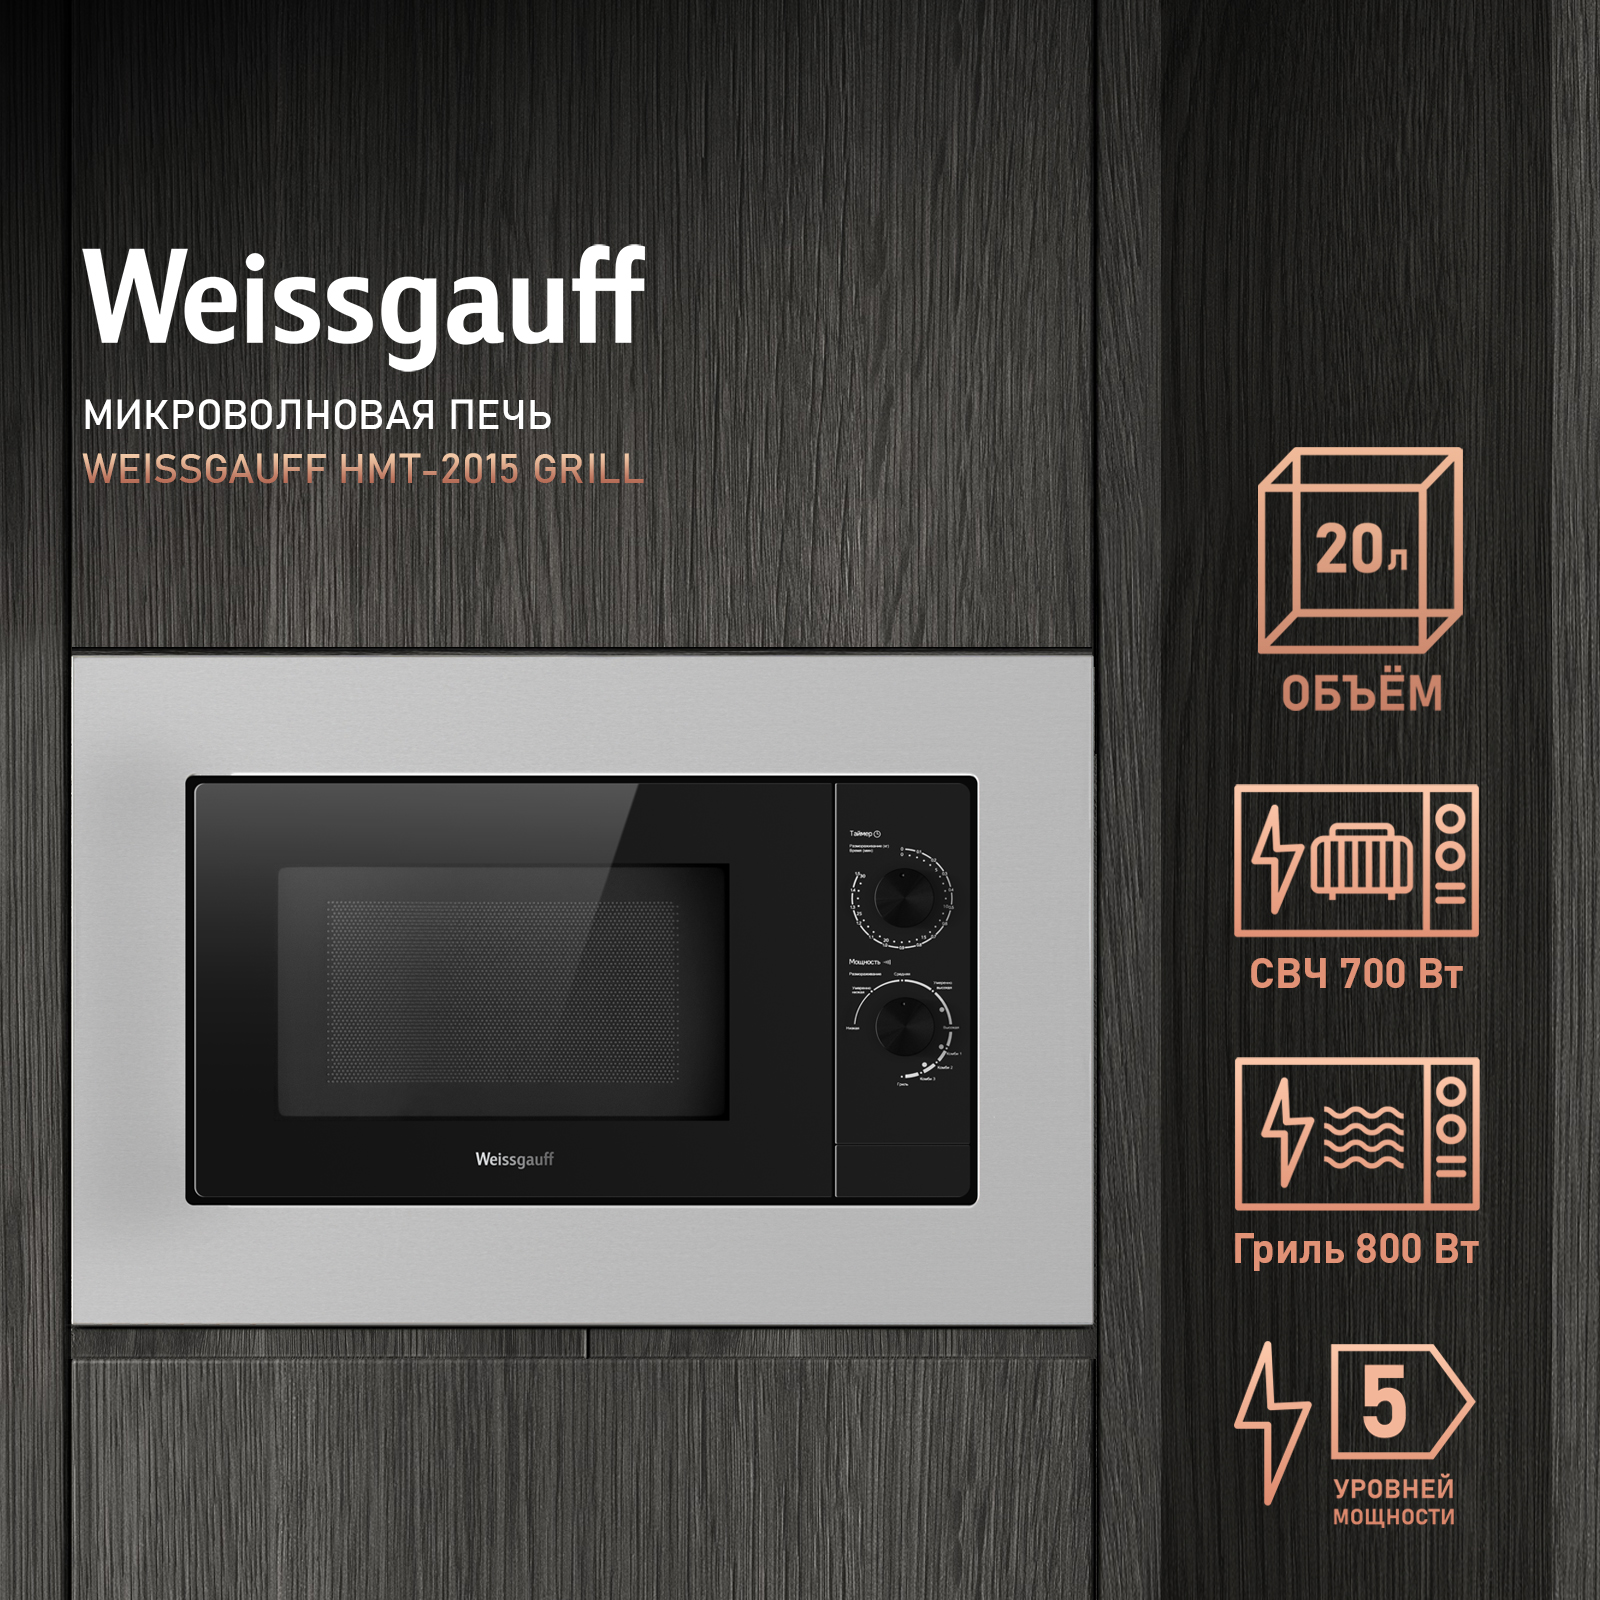 Встраиваемая микроволновая печь Weissgauff HMT-2015 Grill серебристая встраиваемая микроволновая печь weissgauff hmt 220 wg grill белый